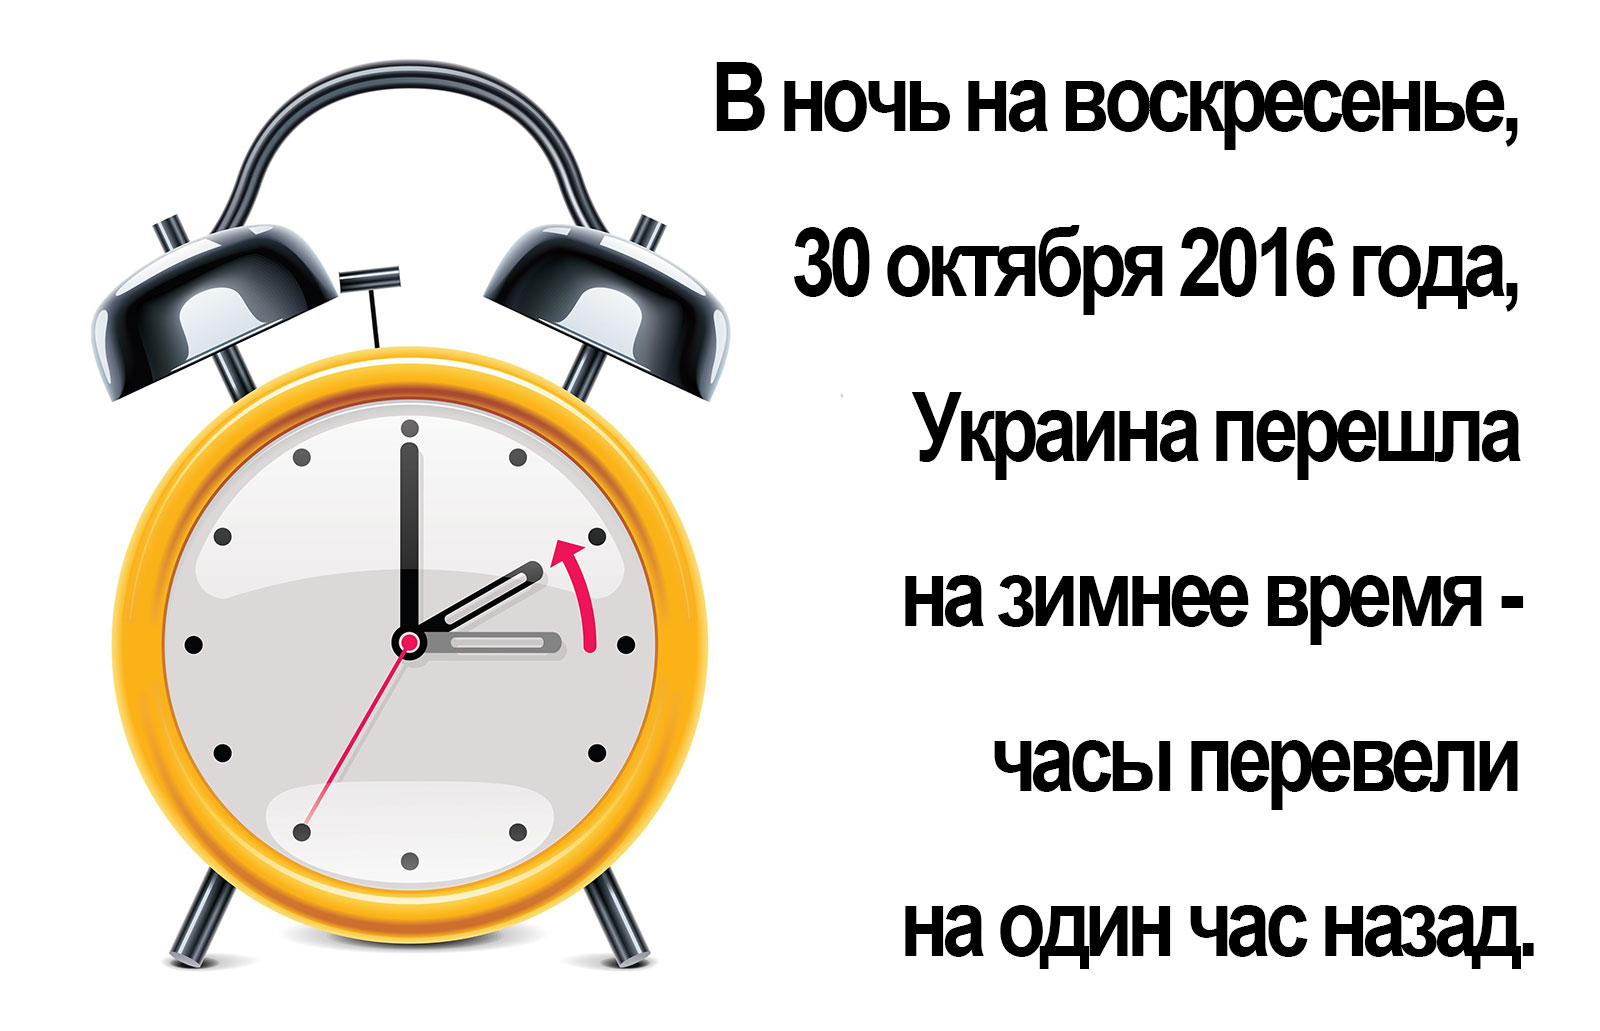 Украина перевела часы на летнее время. Часы назад. Доброго воскресенья часы перевели. Перевод стрелок часов на летнее зимнее время картинки. Воскресенье за тридцать.